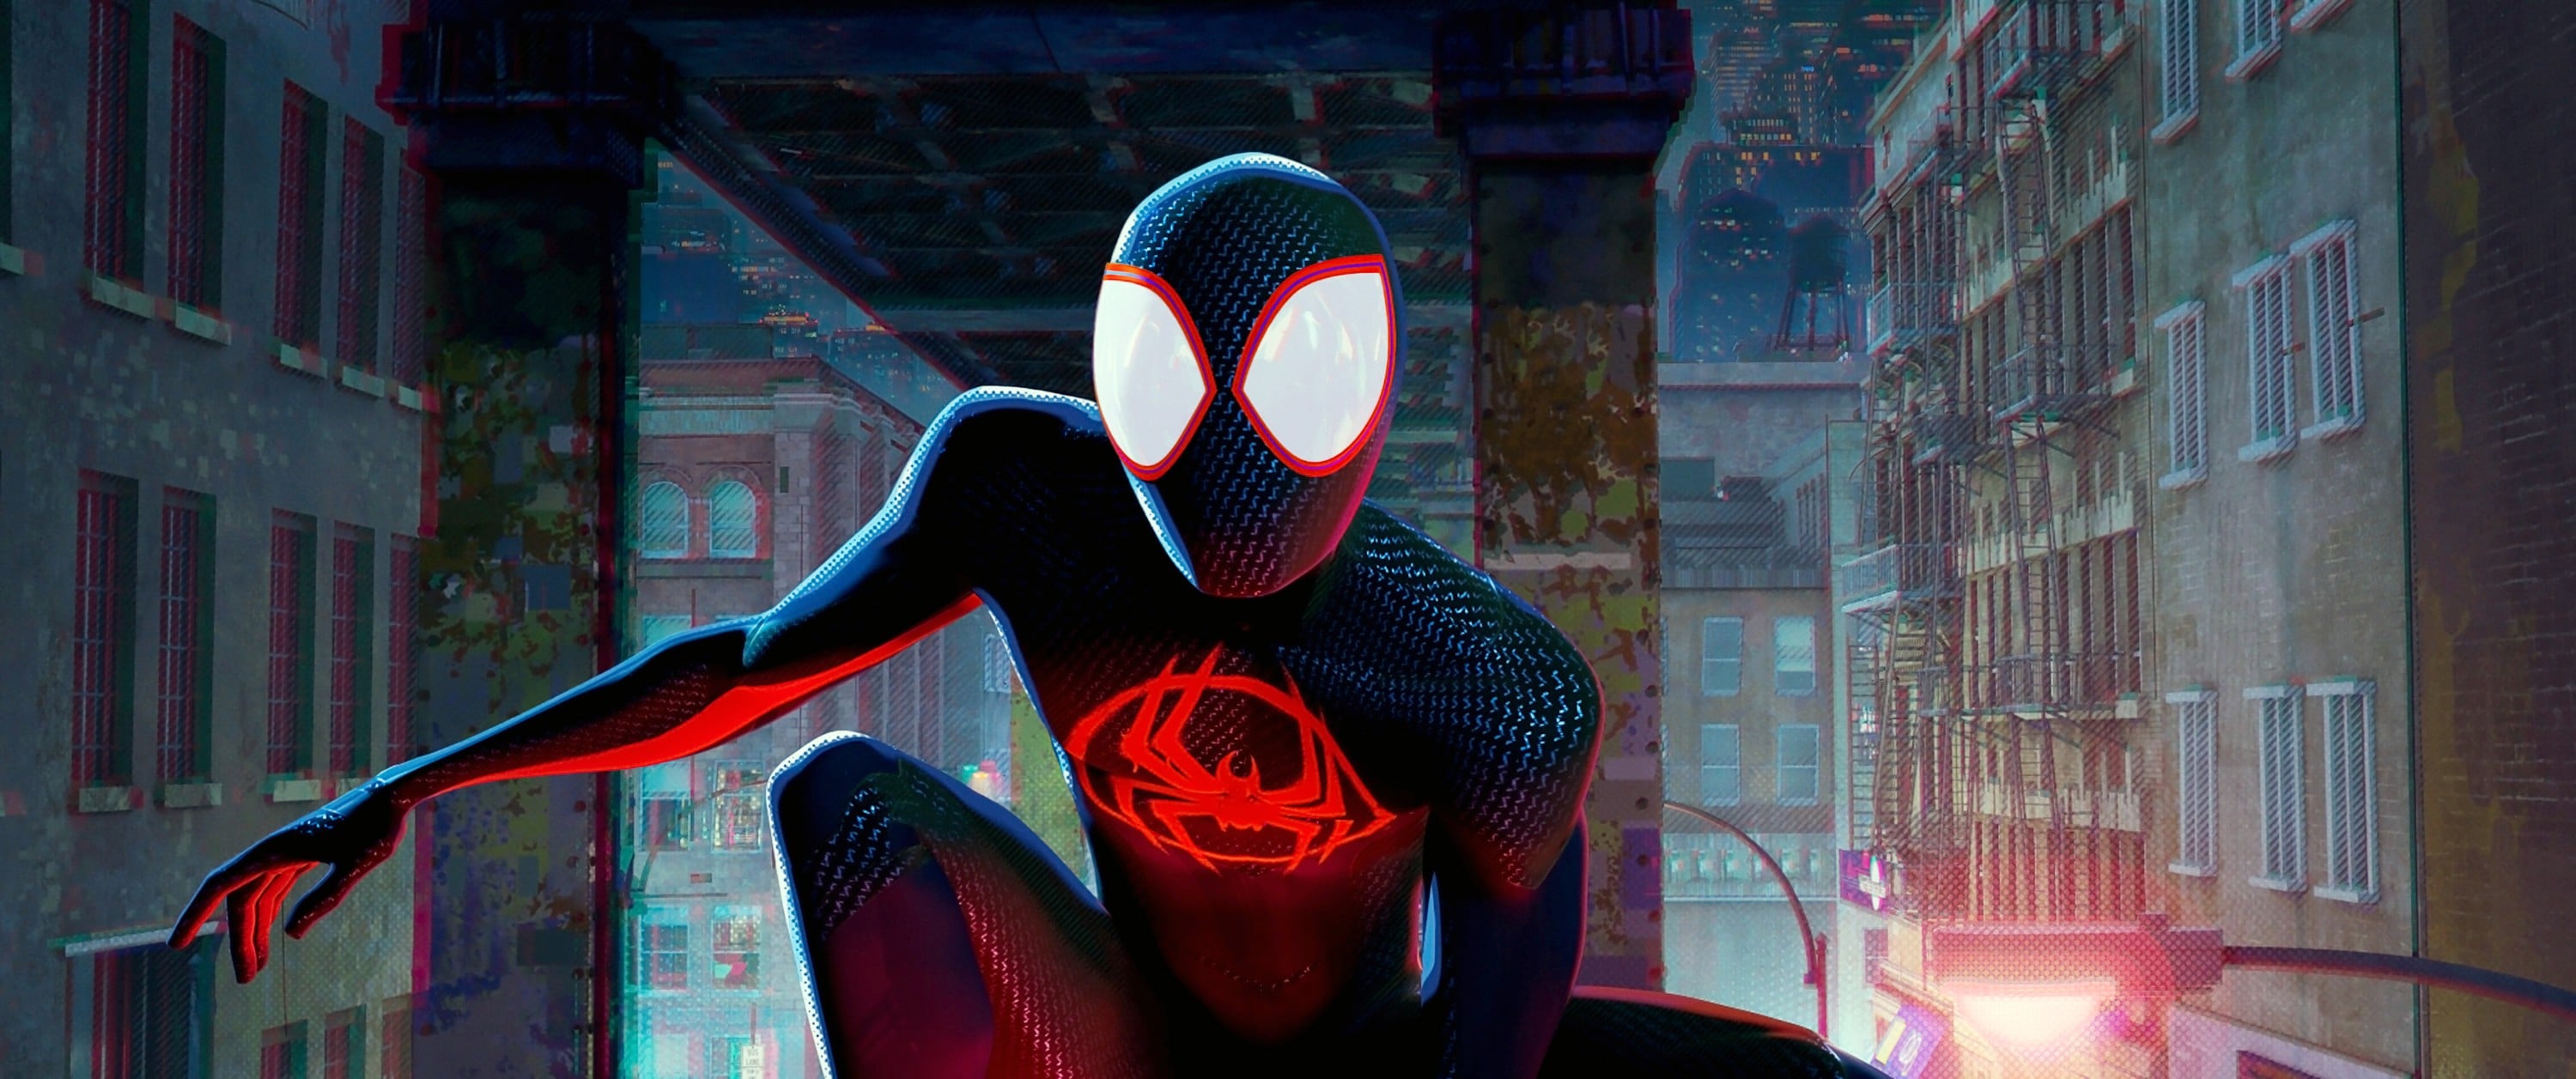 Marvel Spider-Man Across The Spider-Verse Partone Spider Punk Rock